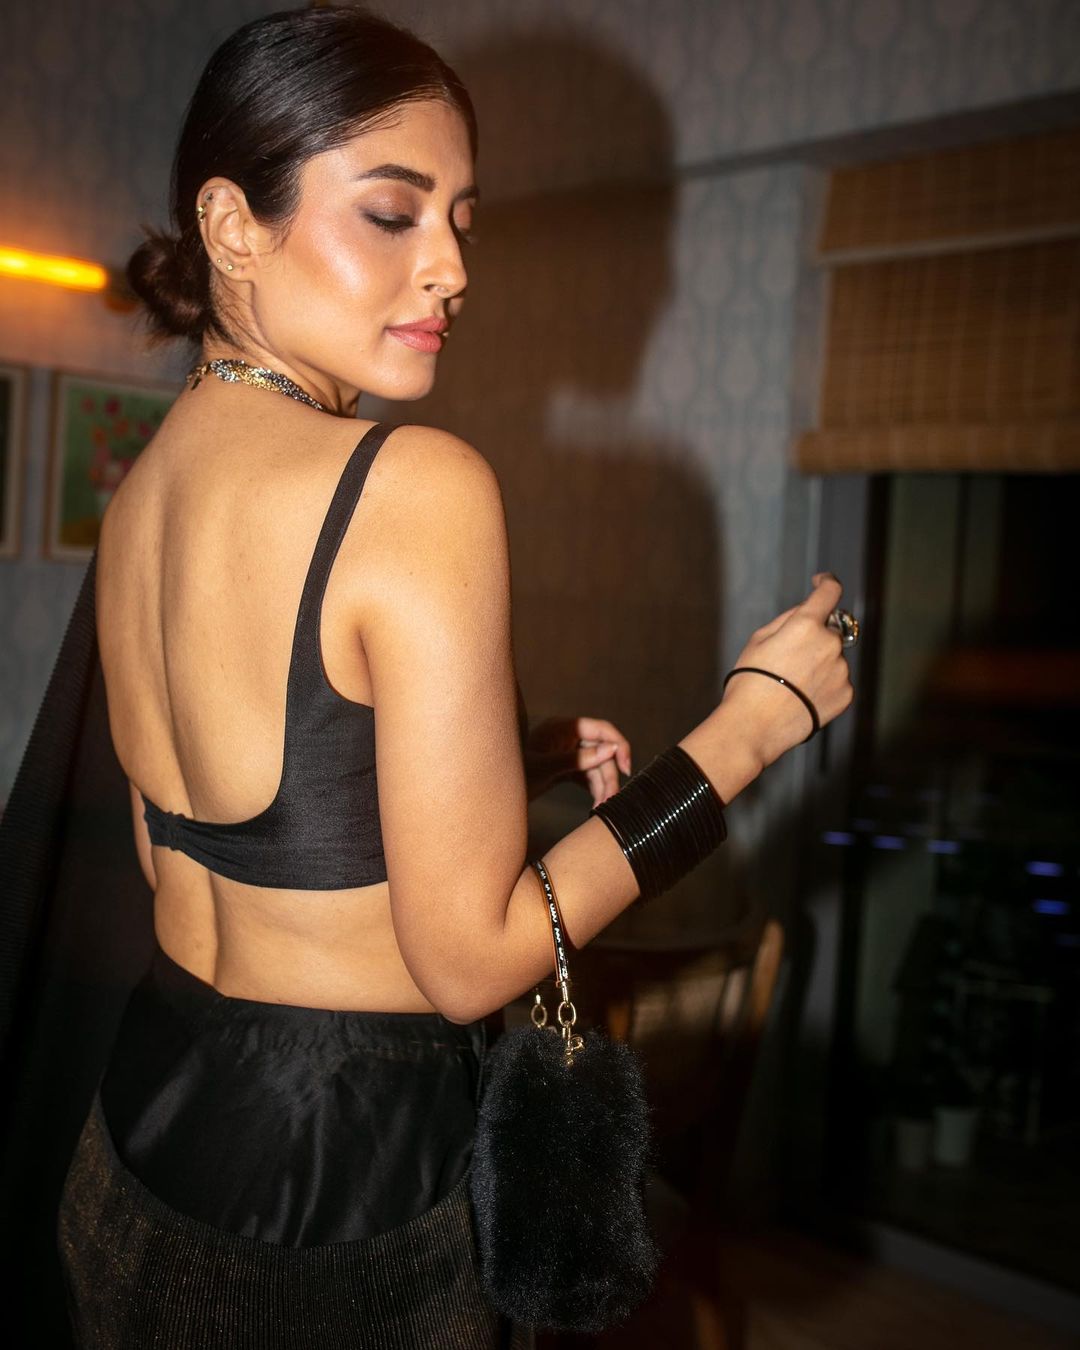 Kritika Kamra backless black saree hot actress